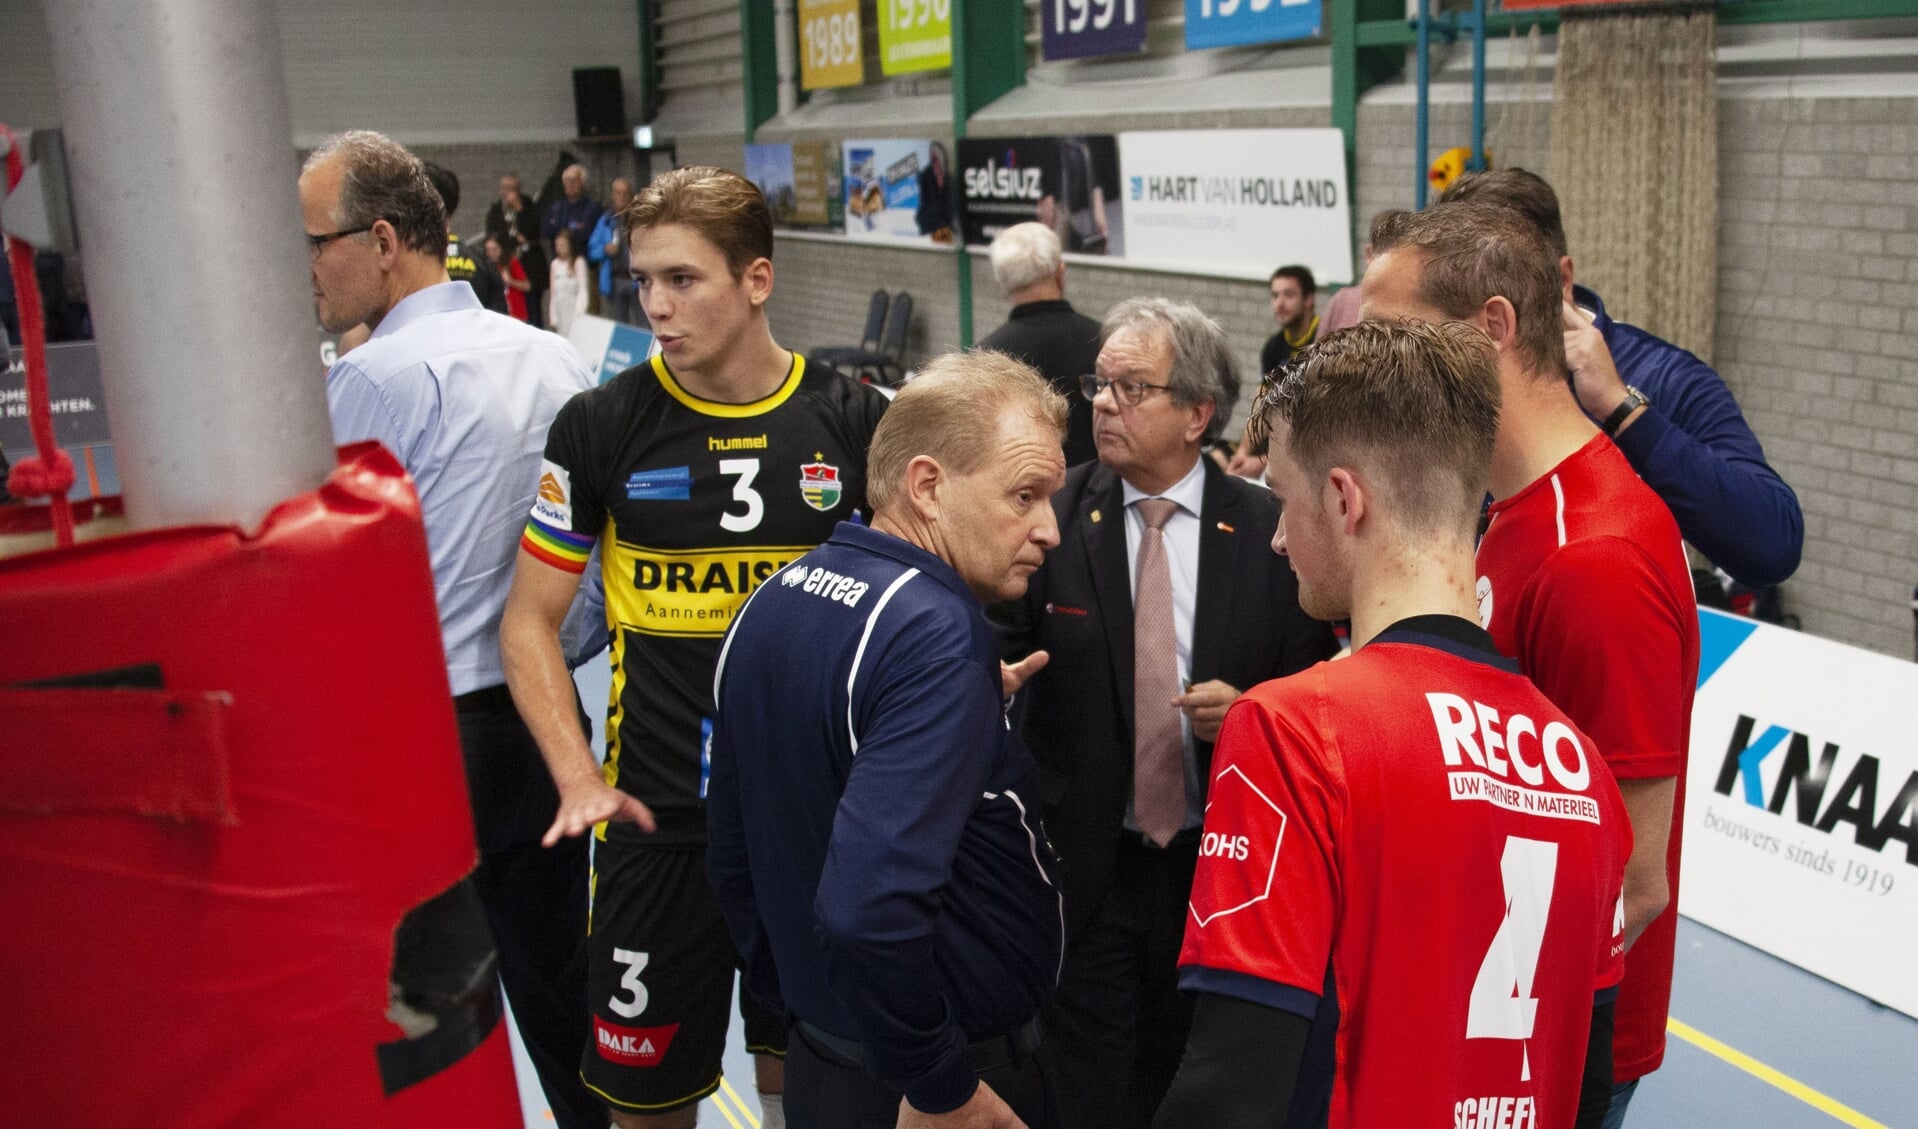 Koortsachtig overleg tussen scheidsrechter Koos Nederhoed, jurylid Huub van Buul en spelers van ZVH en Dynamo (foto: André Dirks).